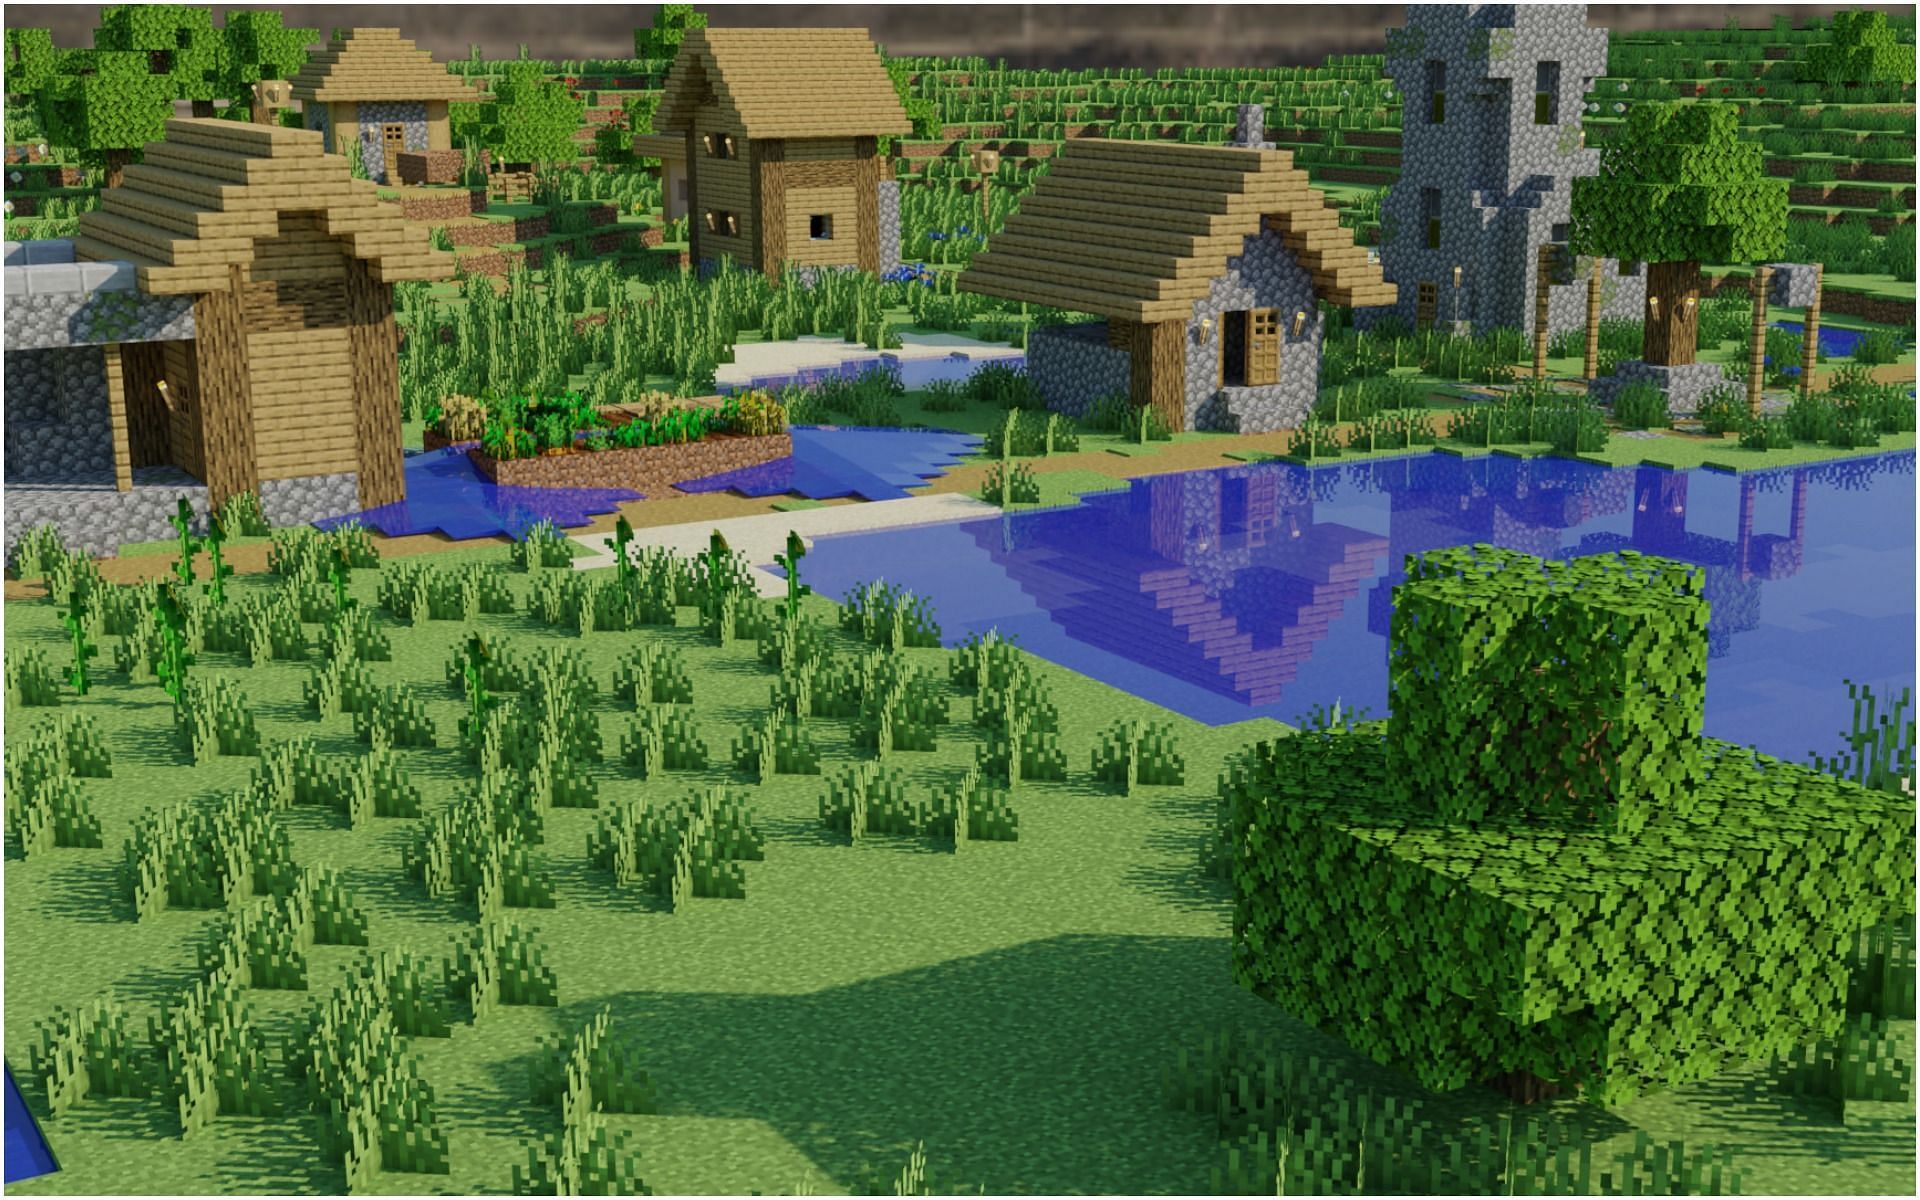 A village in Minecraft (Image via Minecraft)